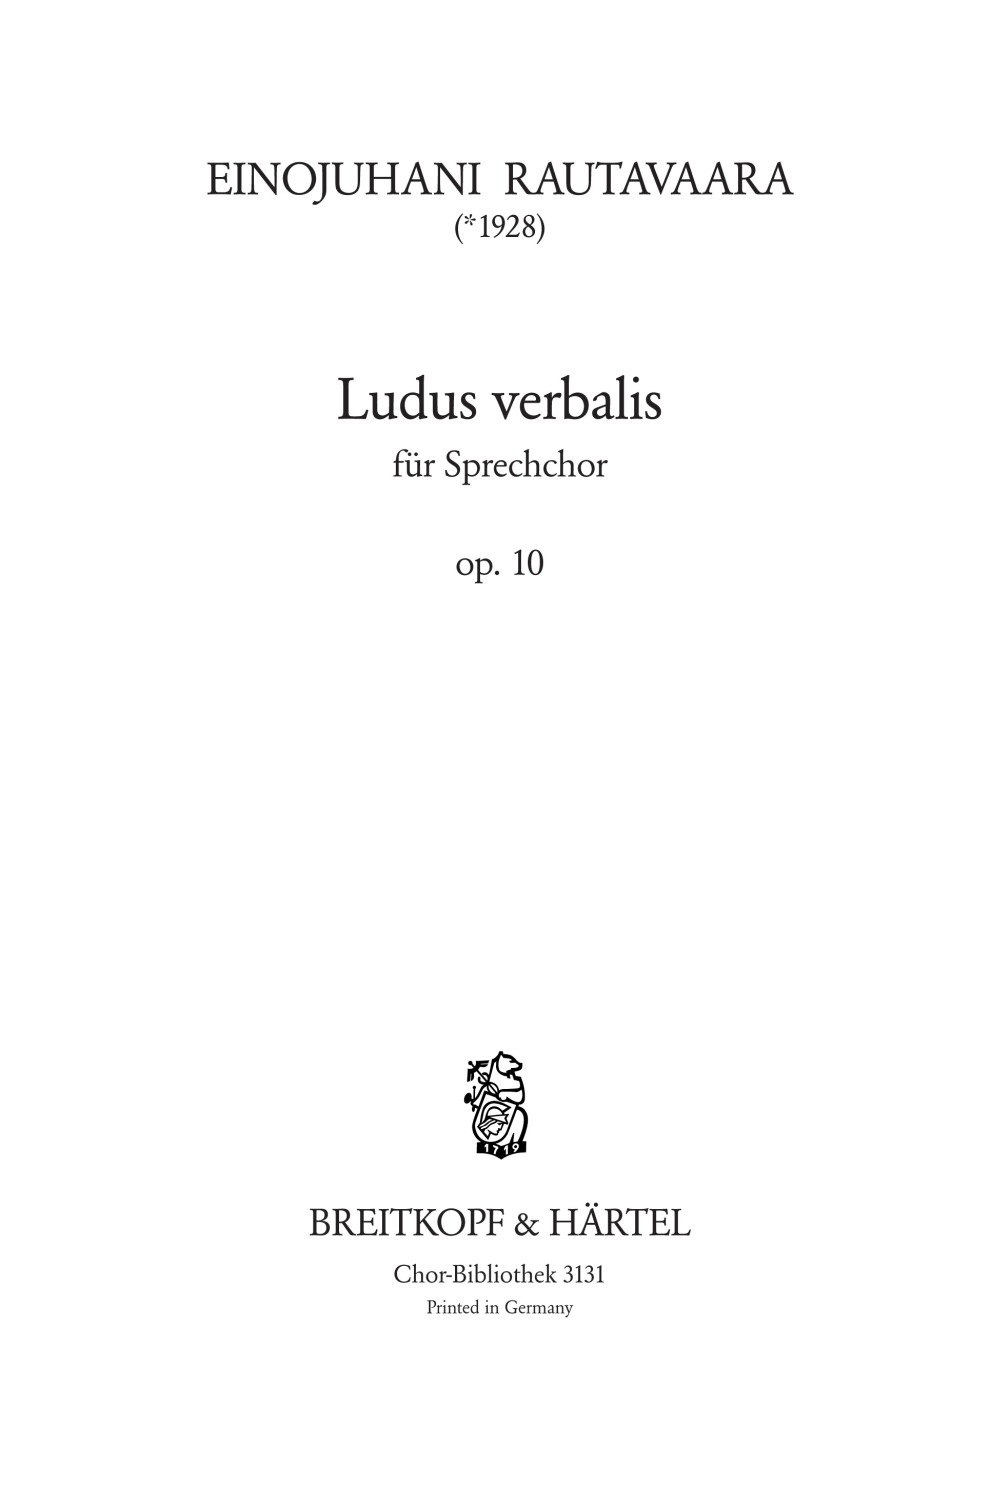 Ludus Verbalis Op. 10